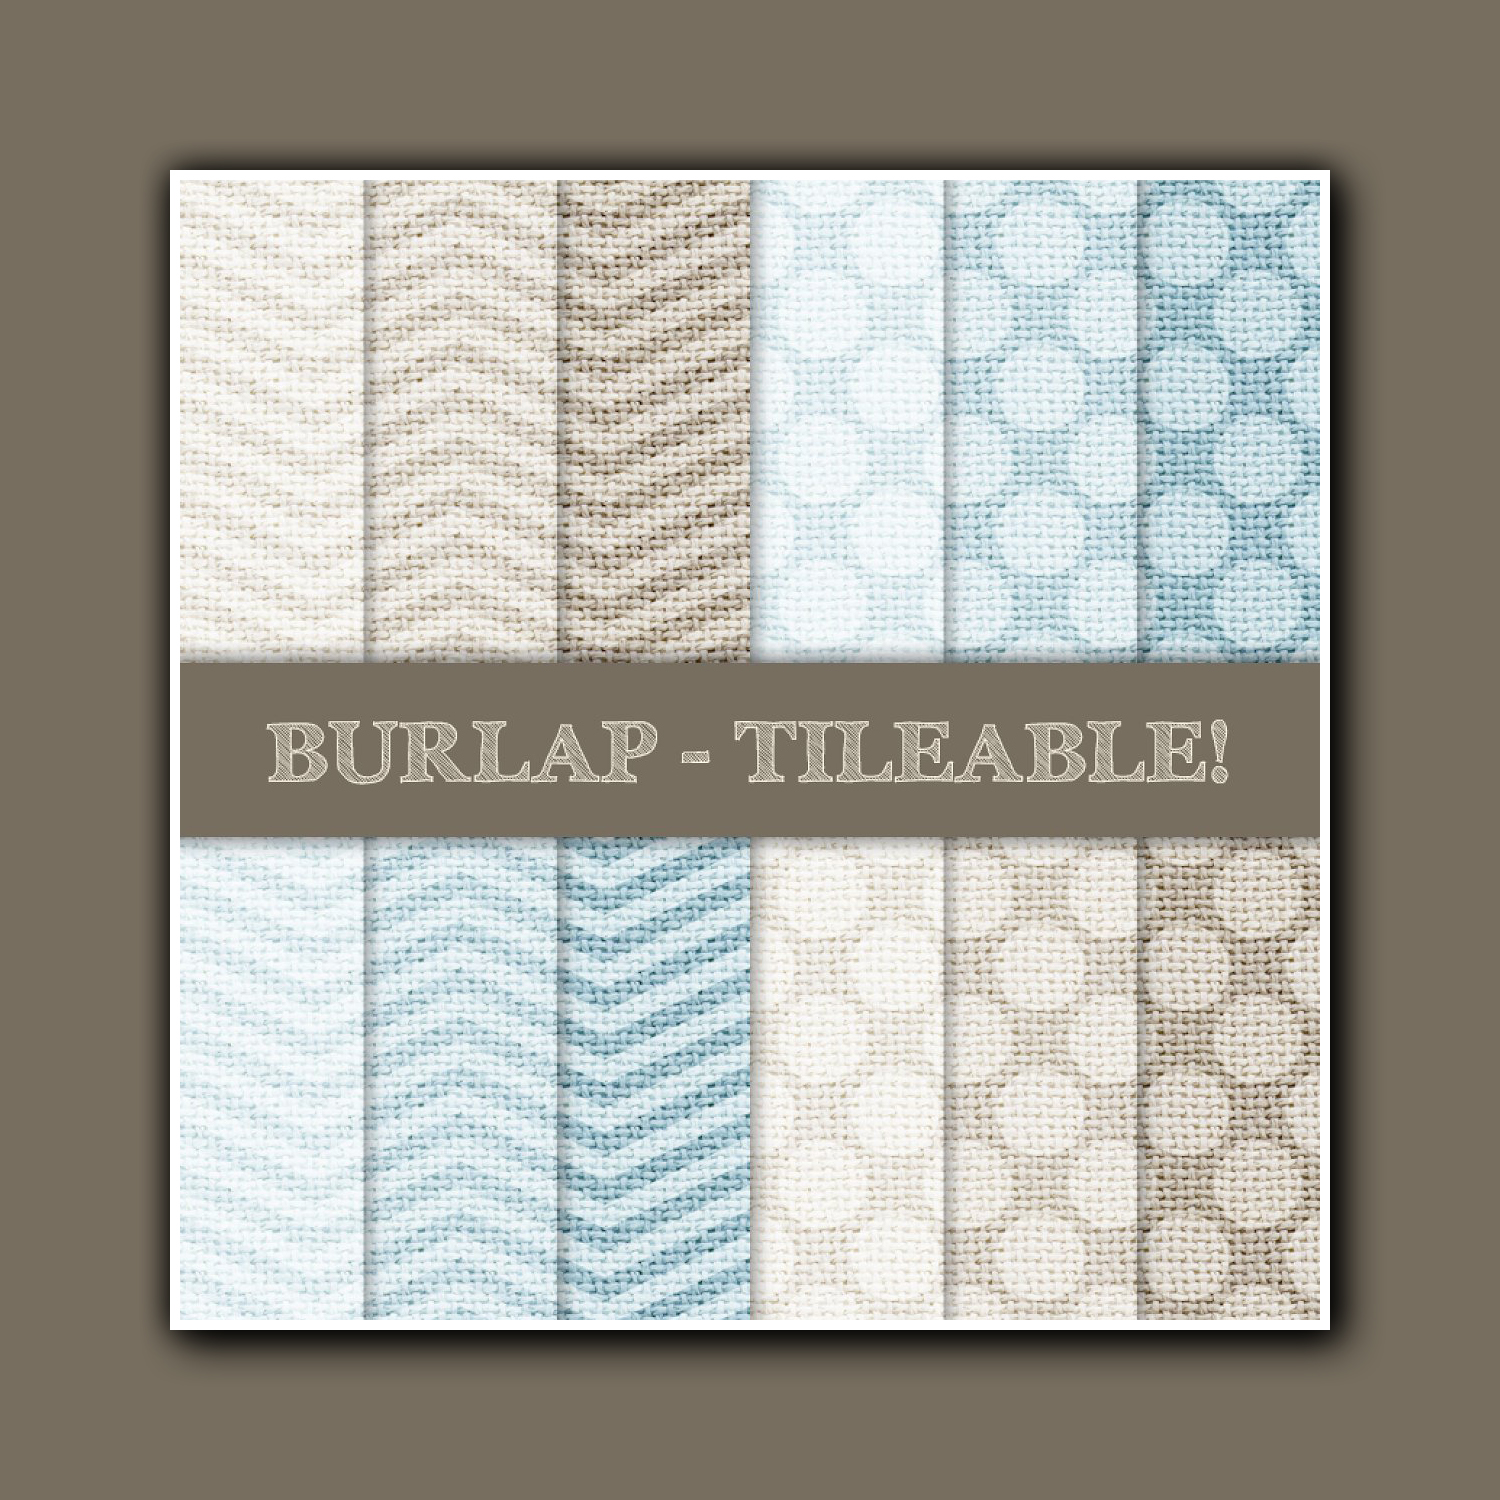 Prints of burlap tileable chevron dots.